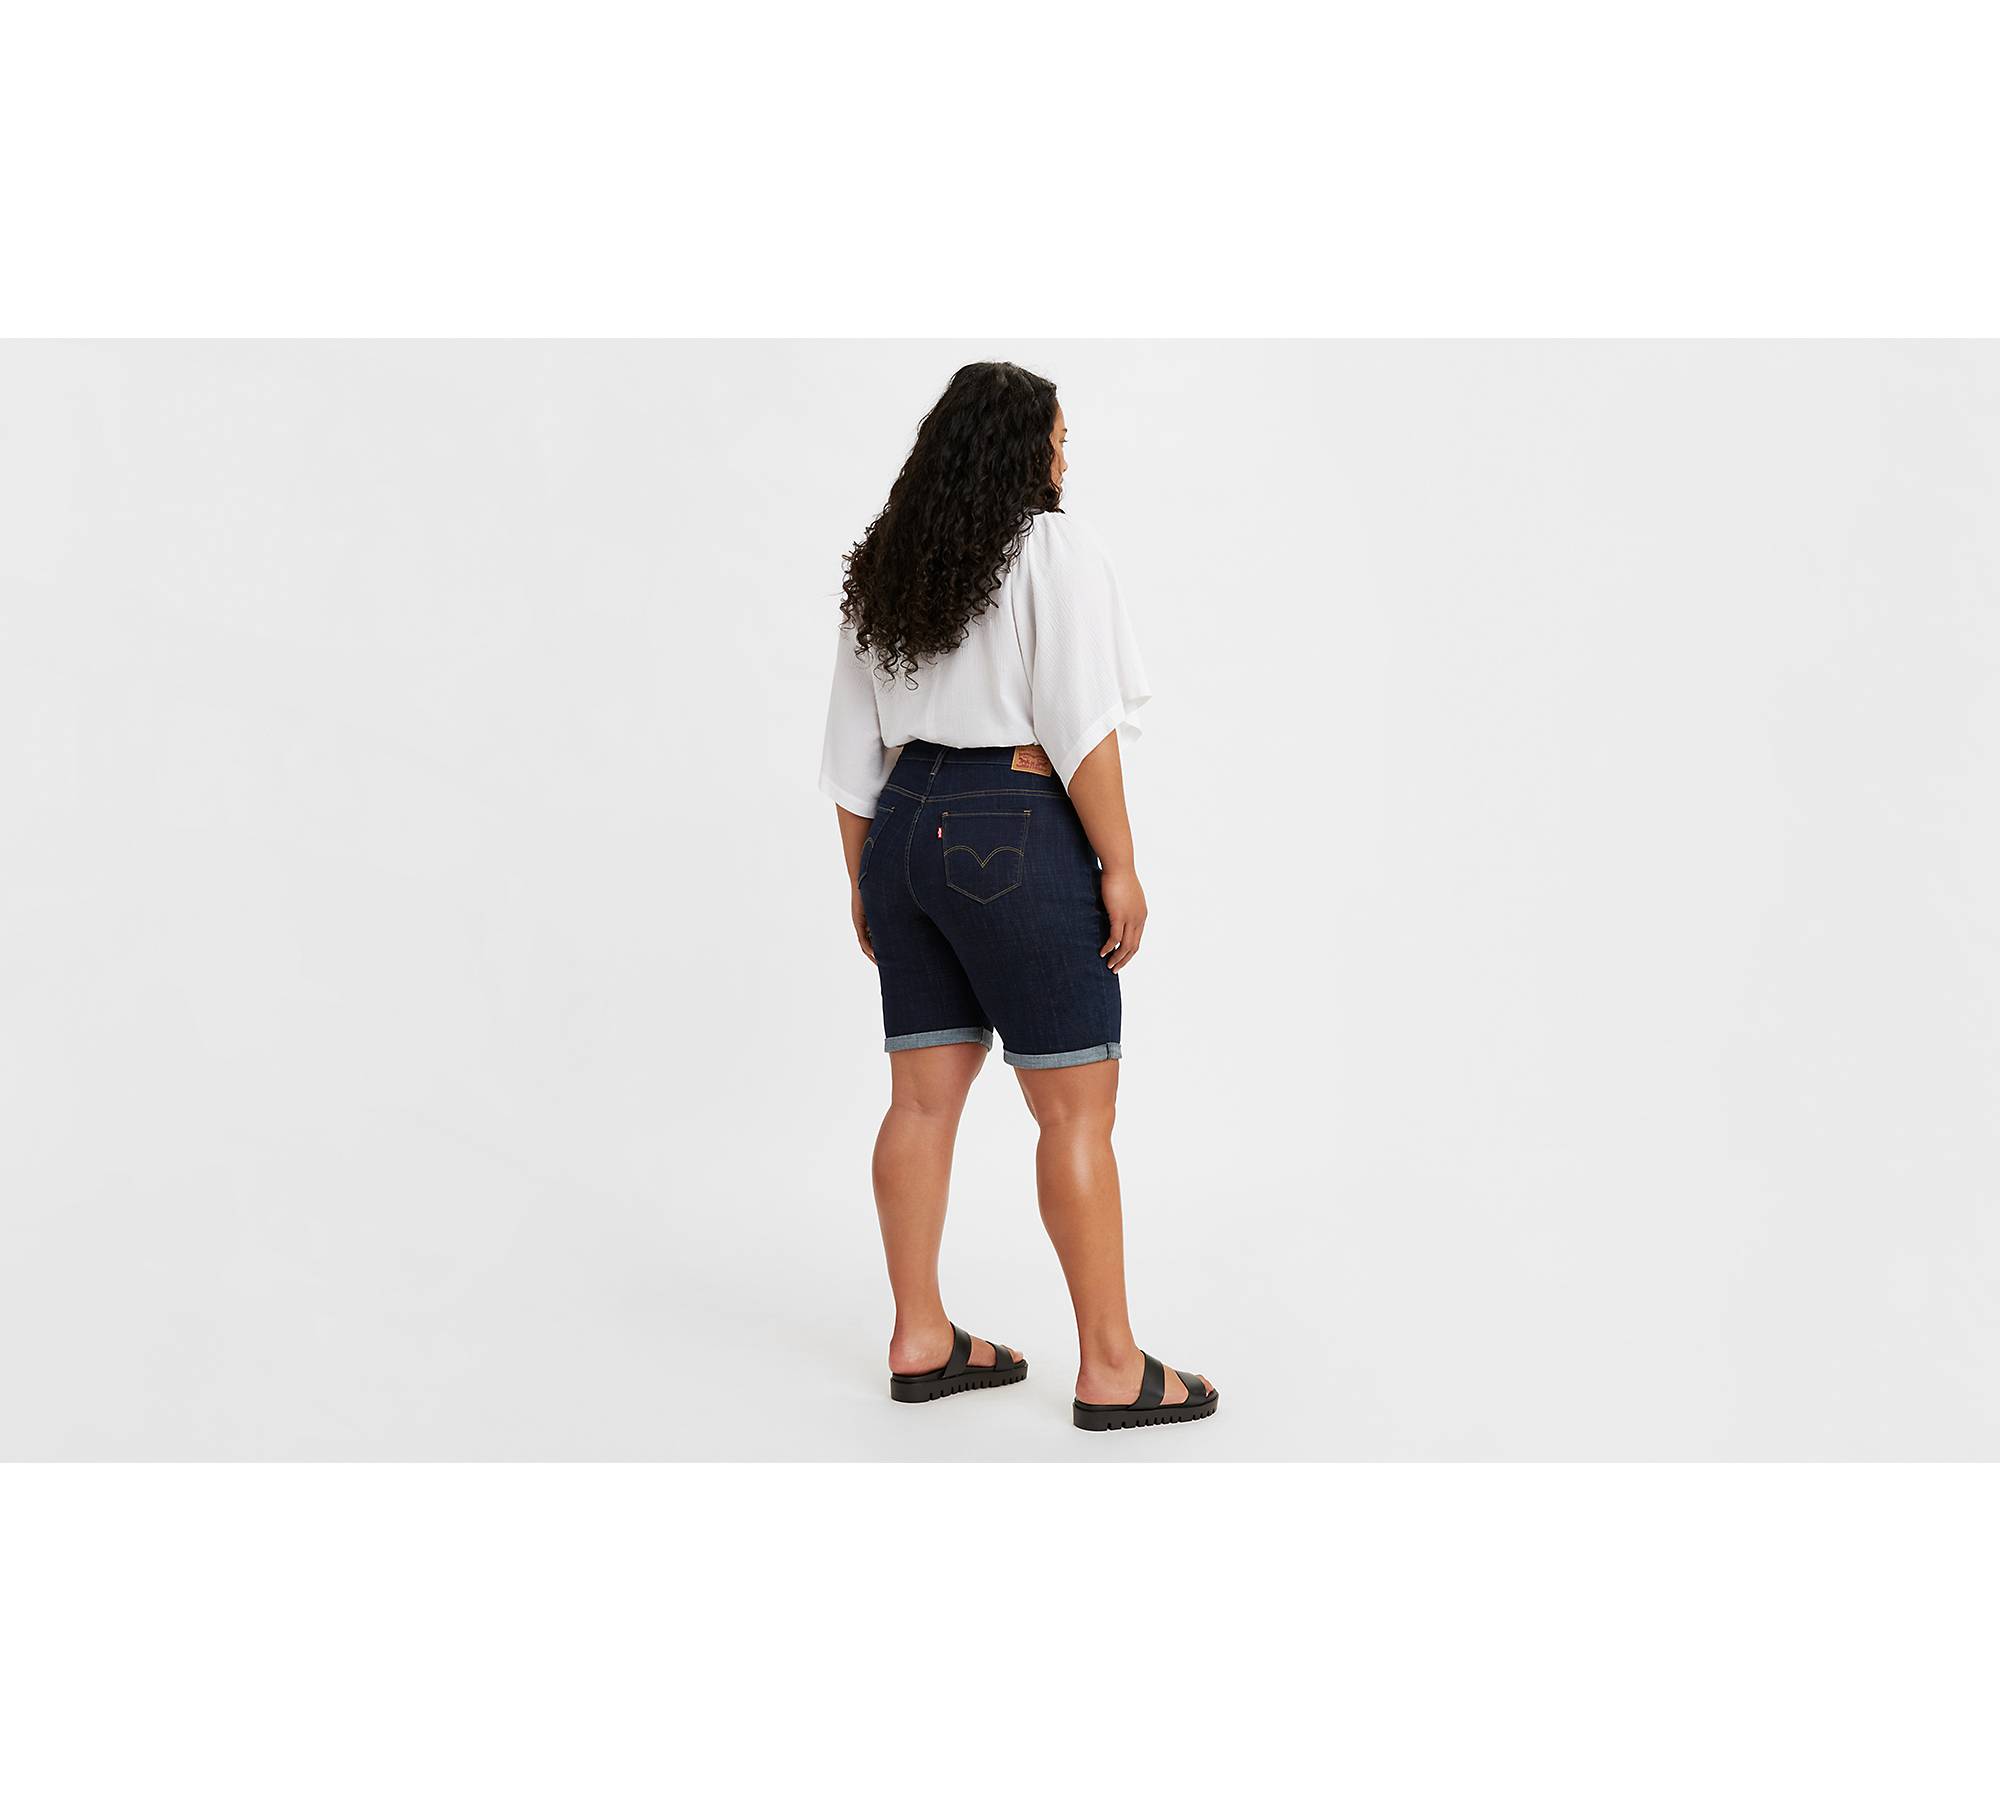  Women's Shorts - Plus Size / Women's Shorts / Women's